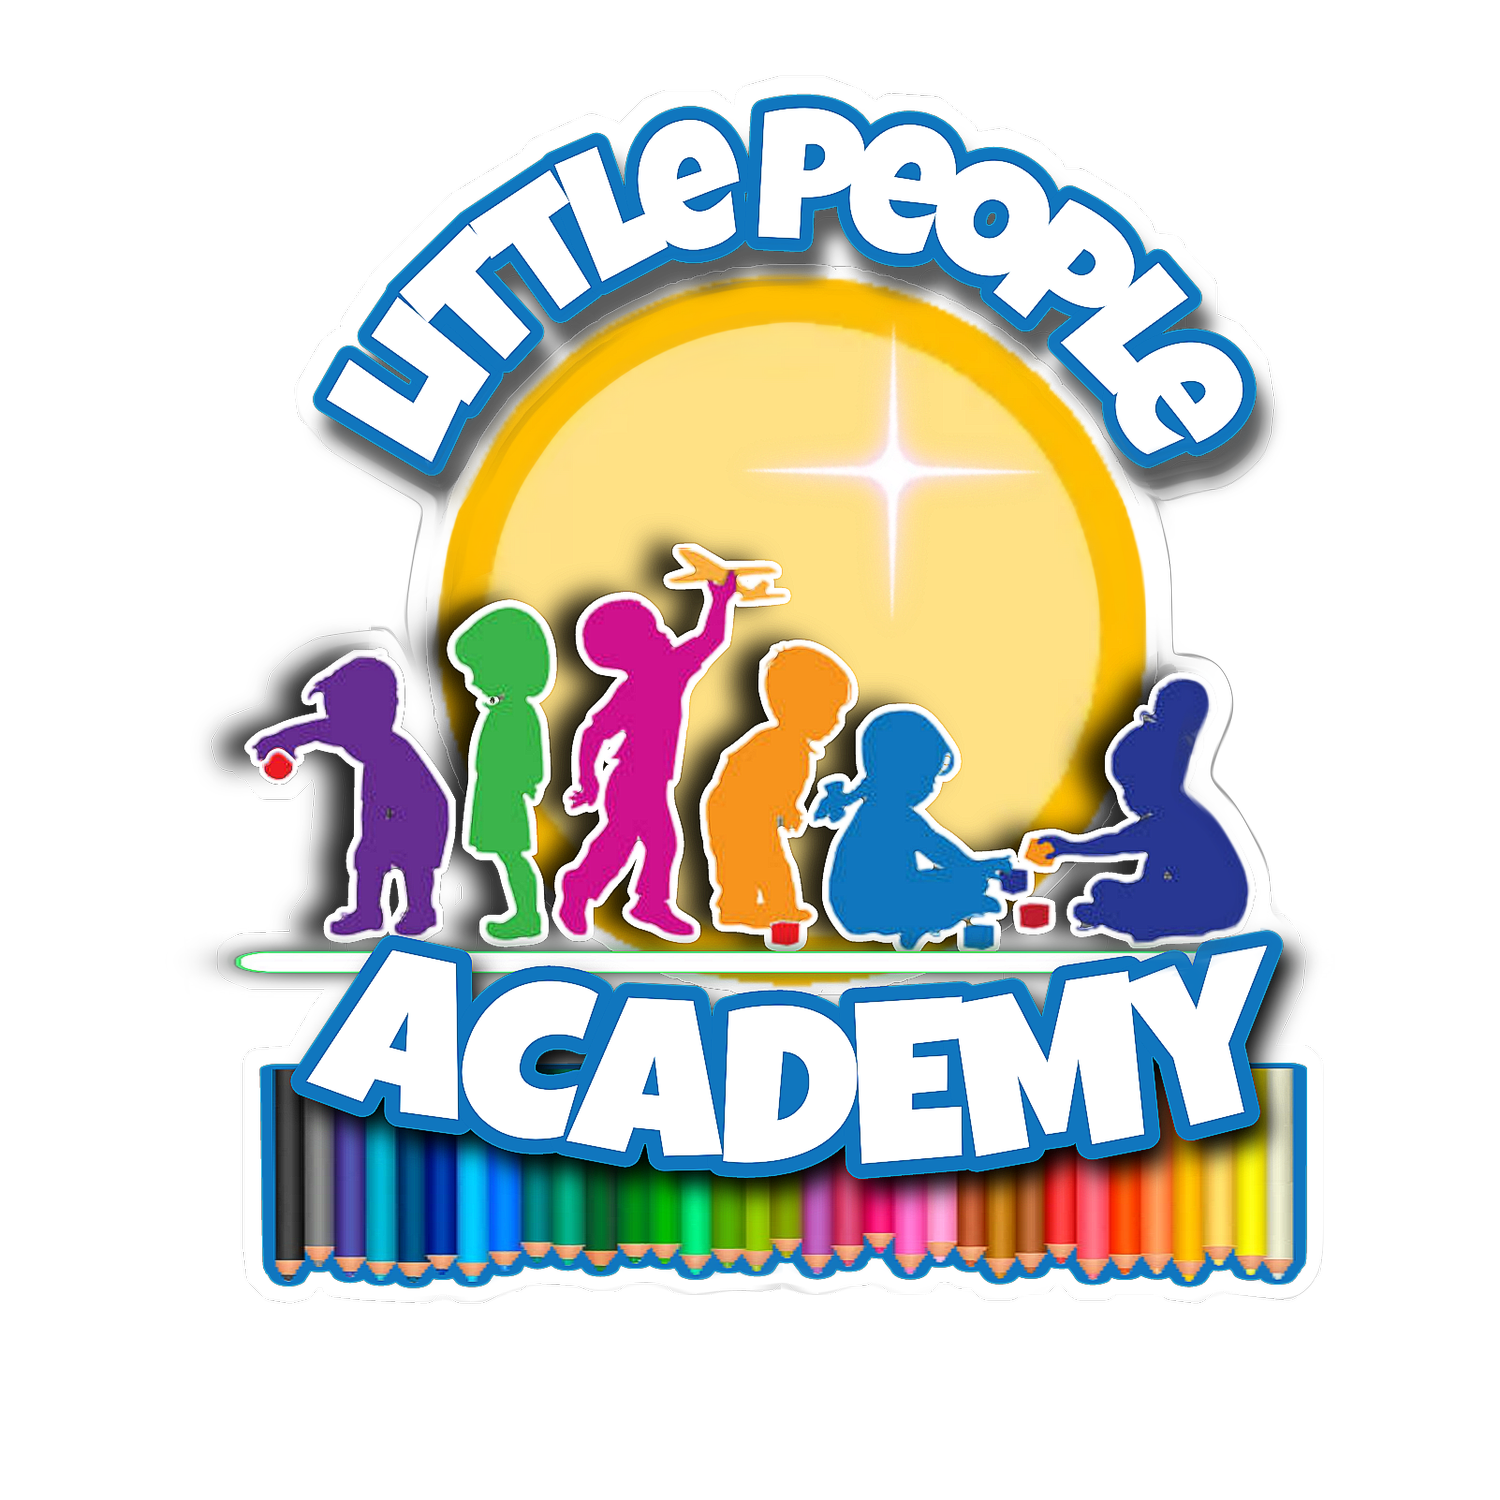 www.littlepeopleacademy.org